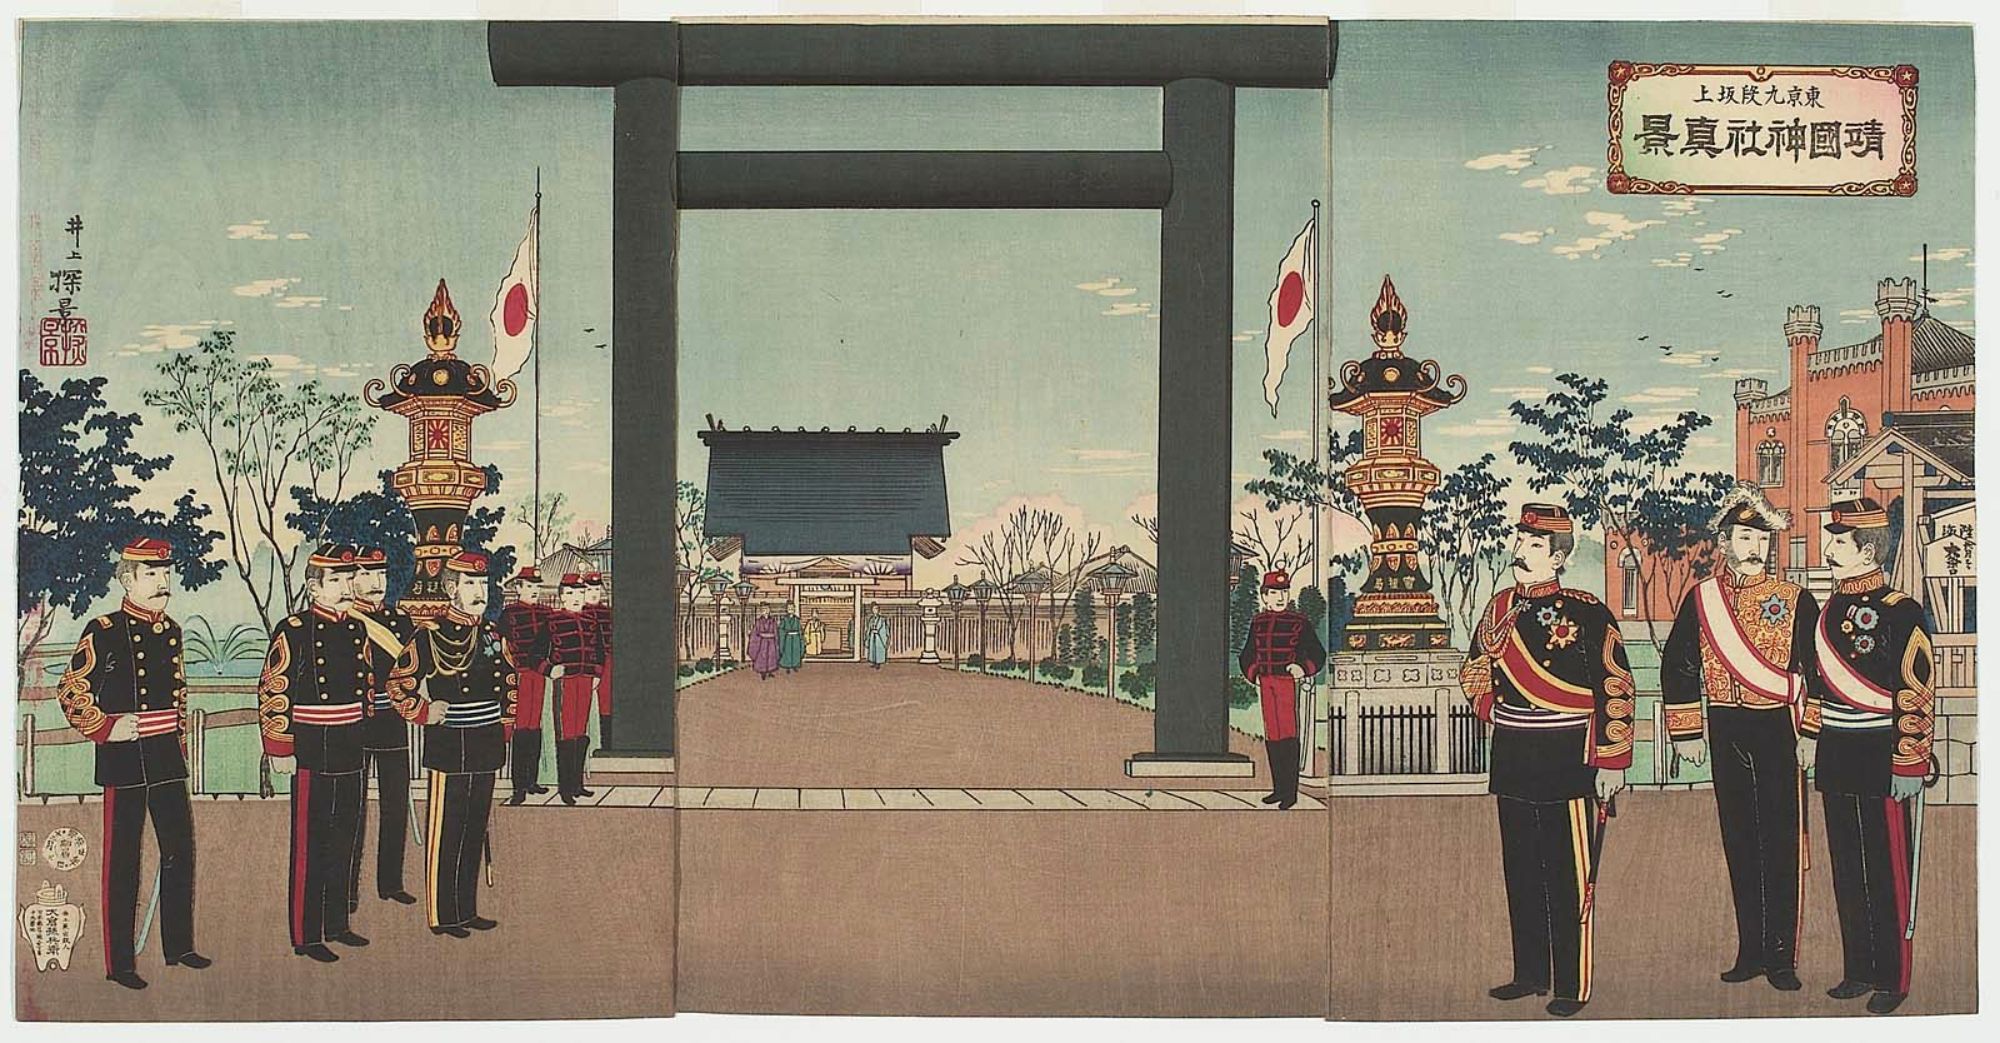 Японская конституция 1889. Школа 19 век Япония эпоха Мэйдзи. Япония 19 век Мэйдзи. Период Мэйдзи в Японии. Япония 19 век дворец сёгуна Мэйдзи.